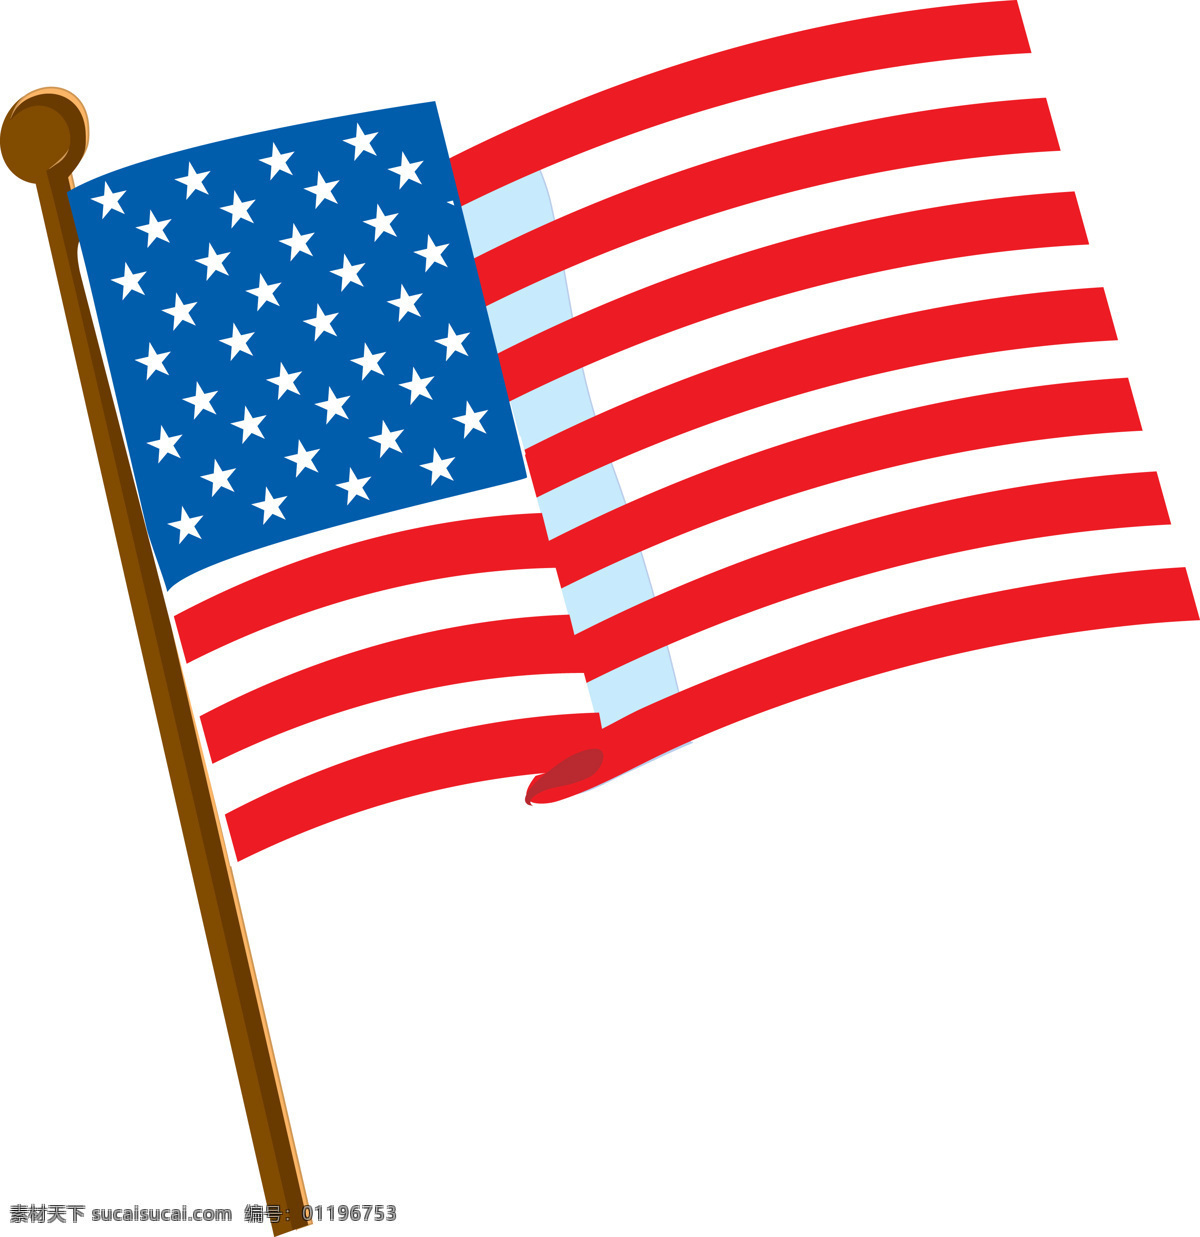 美国国旗 美国 国旗 欧美 国旗素材 公共标识标志 标志图标